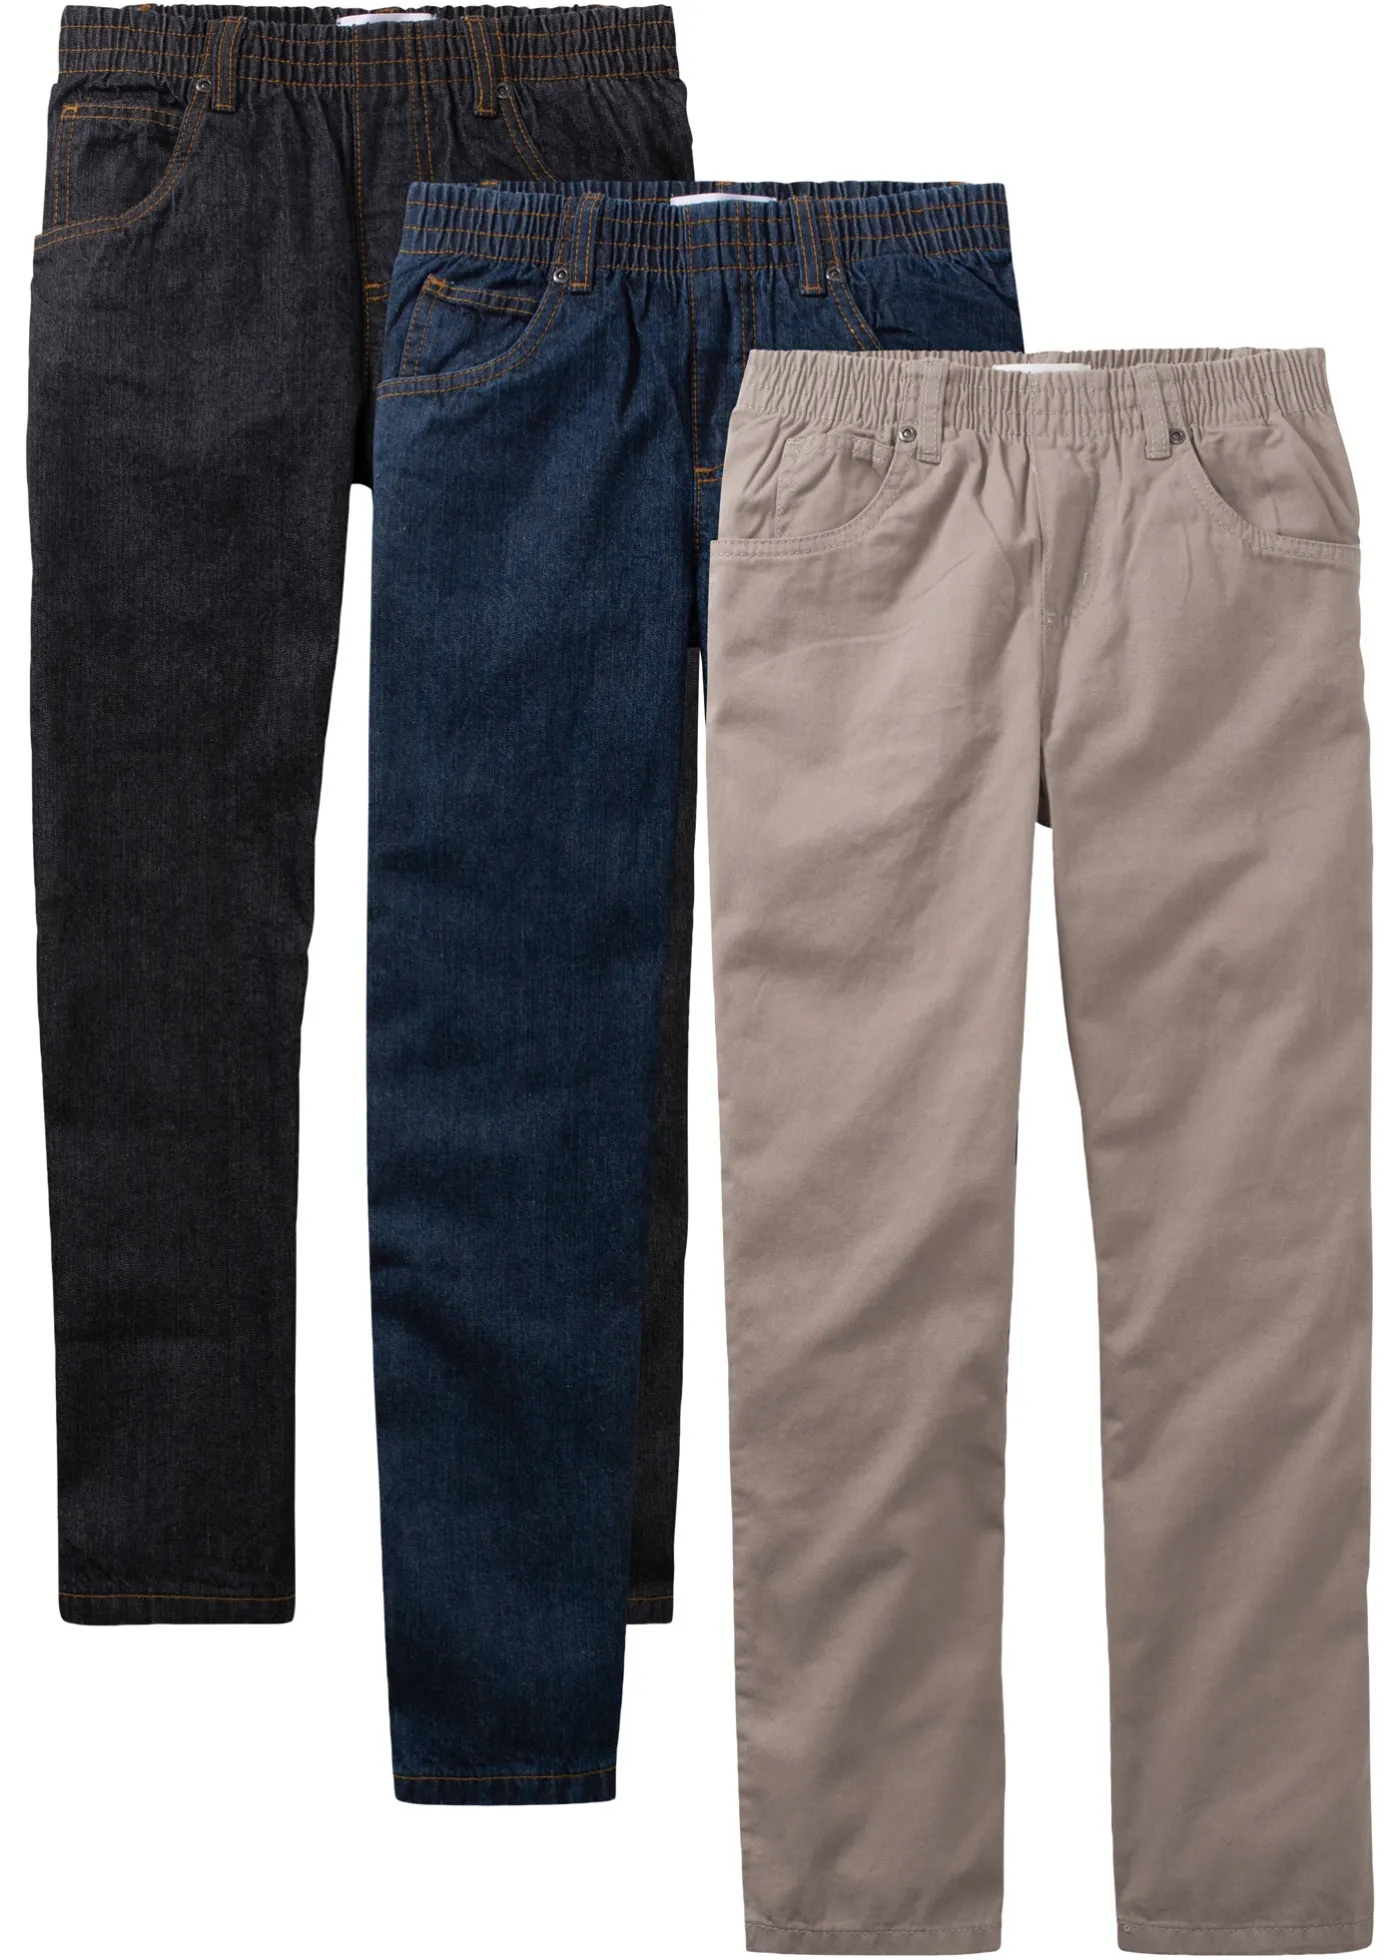 Pantaloni basic, modello cinque tasche con elastico in vita (Nero) - John Baner JEANSWEAR